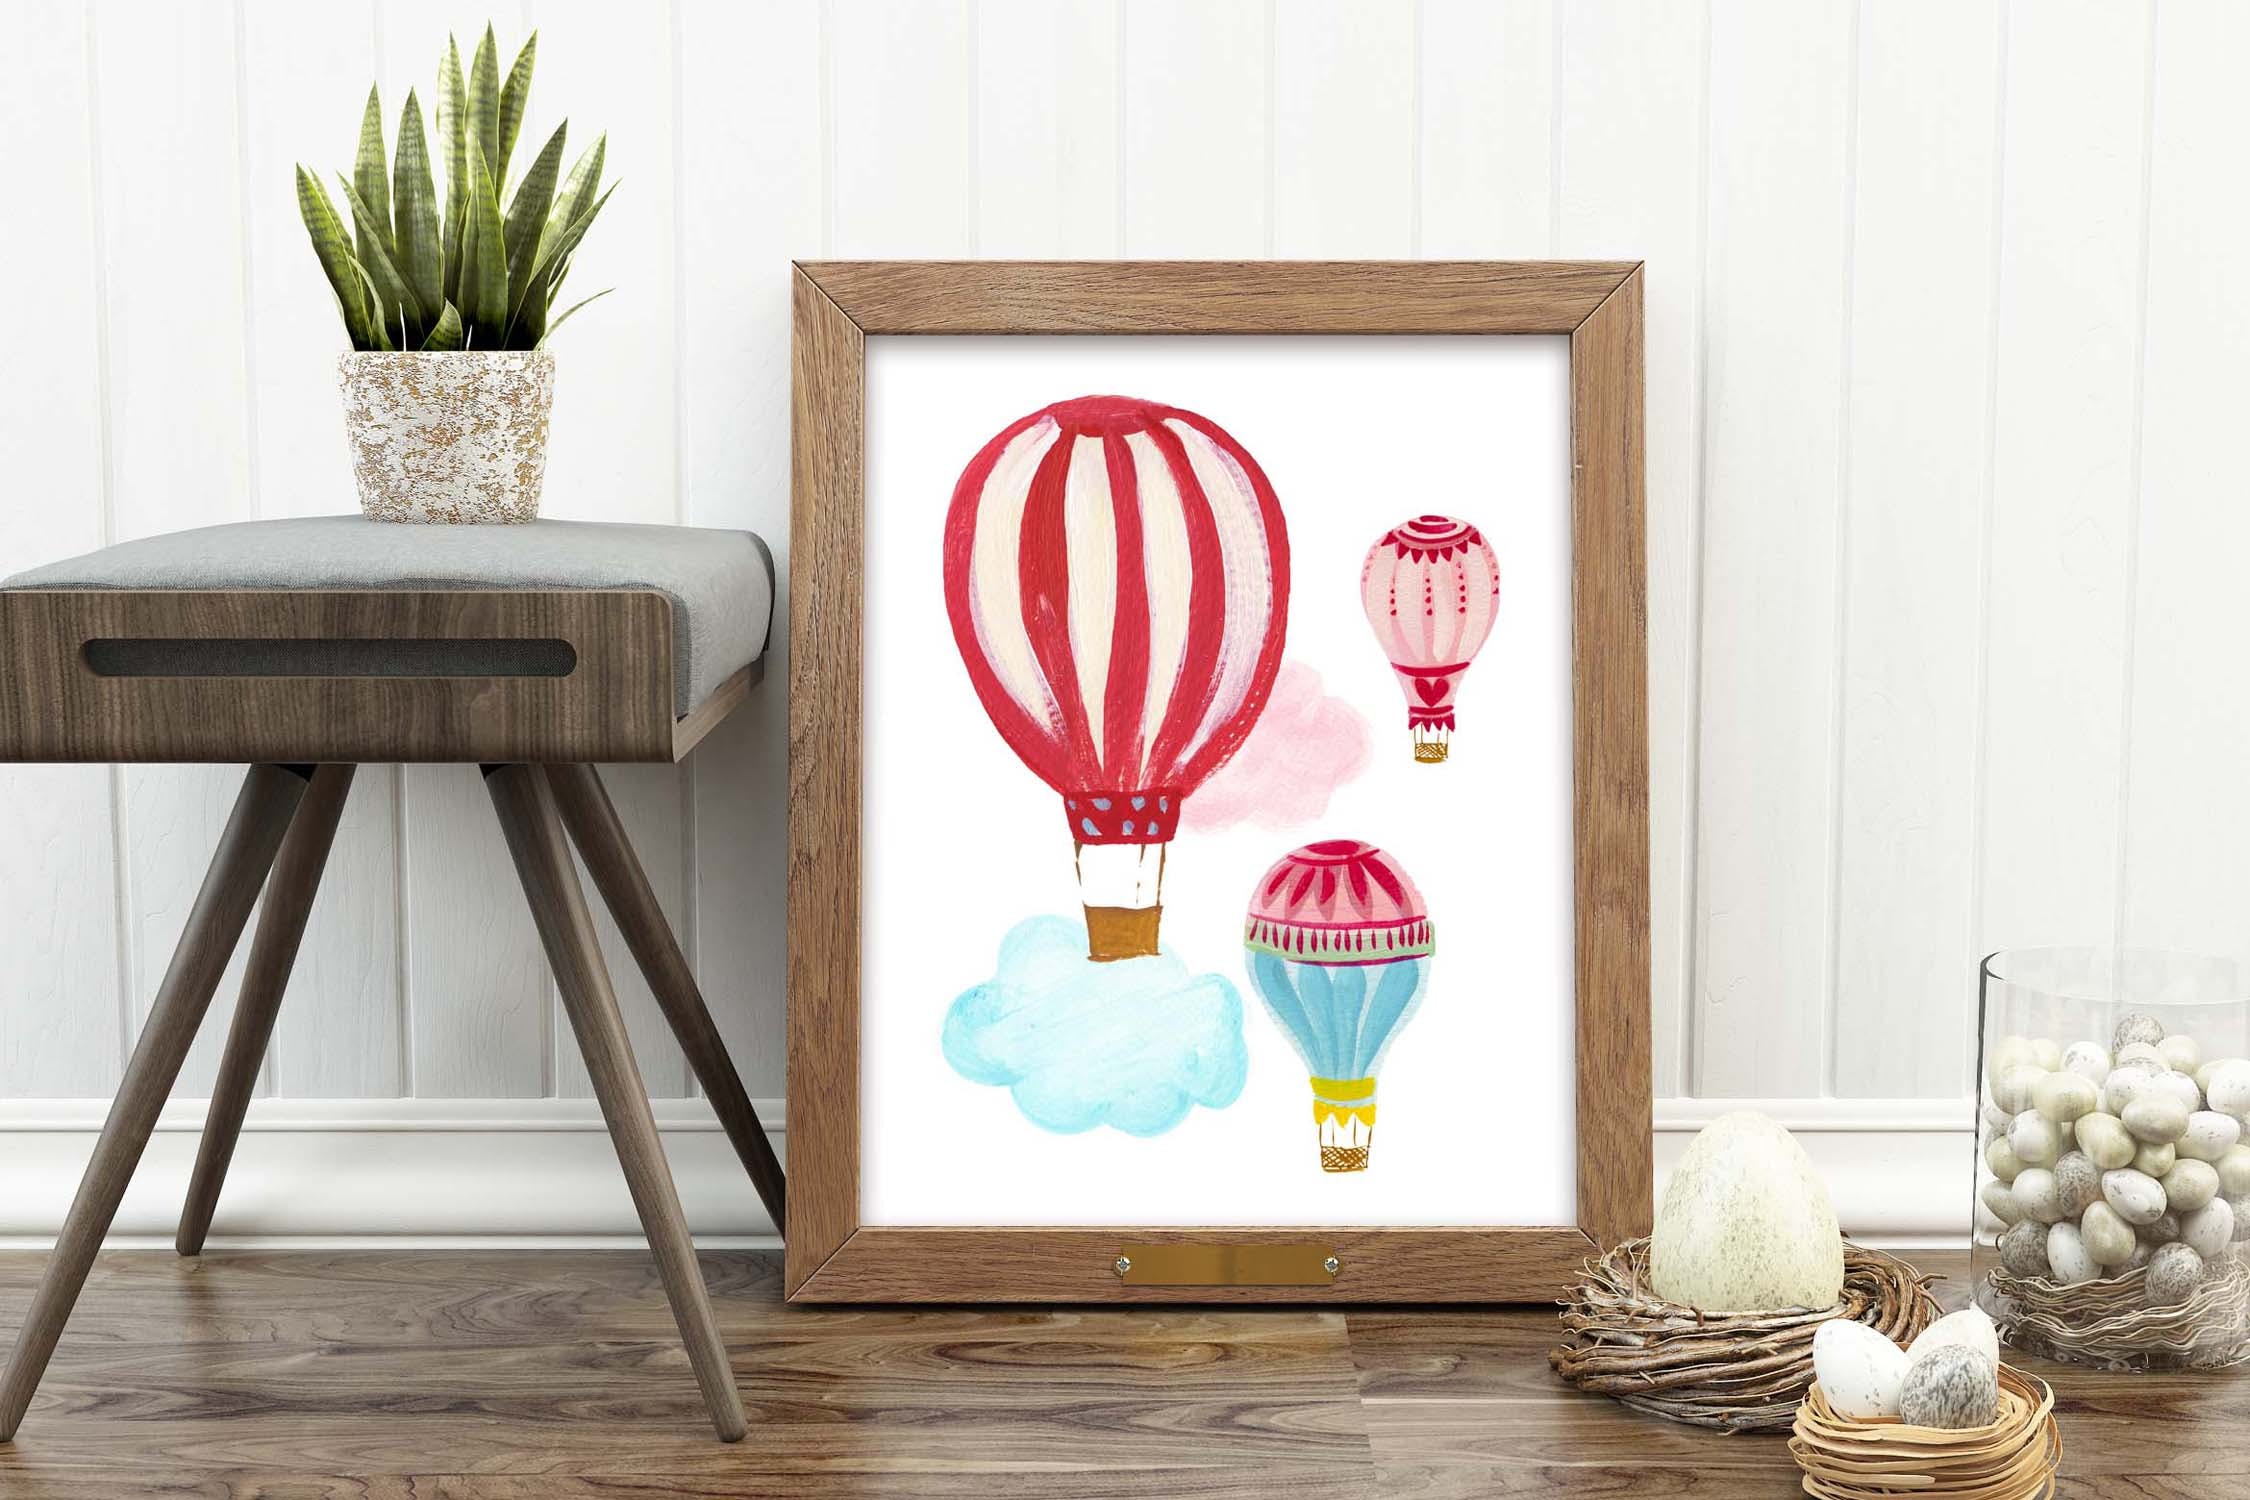 热气球剪贴画和图案集 Hot Air Balloons clipart & pattern set 图片素材 第5张